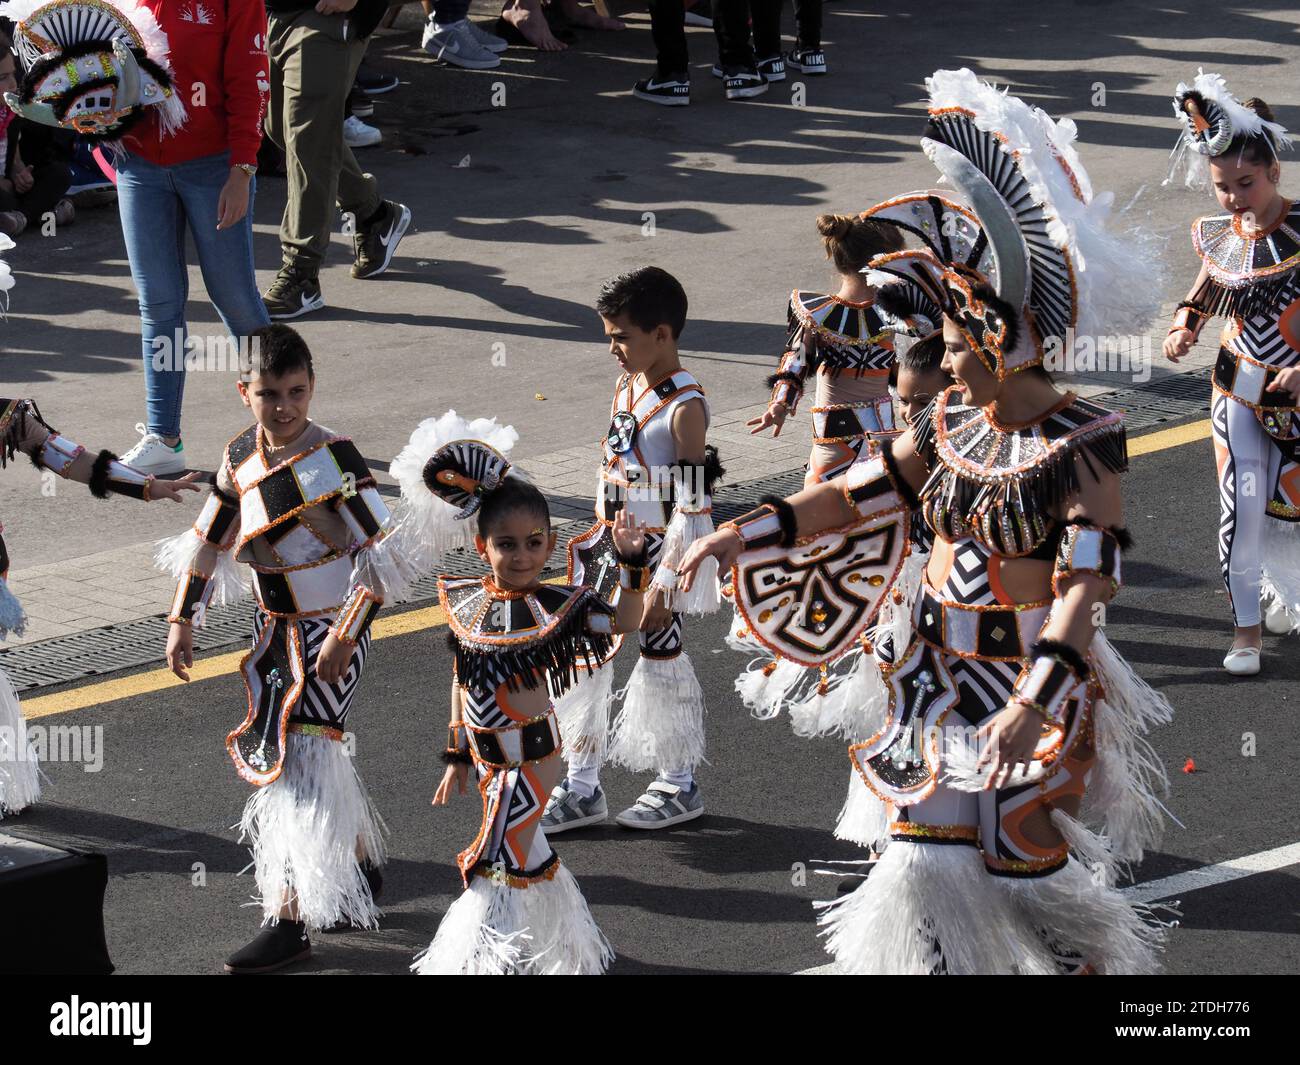 Tenerife, Espagne- 05 mars 2019 : célèbre Festival de Carnaval dans les rues de Santa Cruz de Tenerife, personnages et groupes au rythme des percussions. Banque D'Images